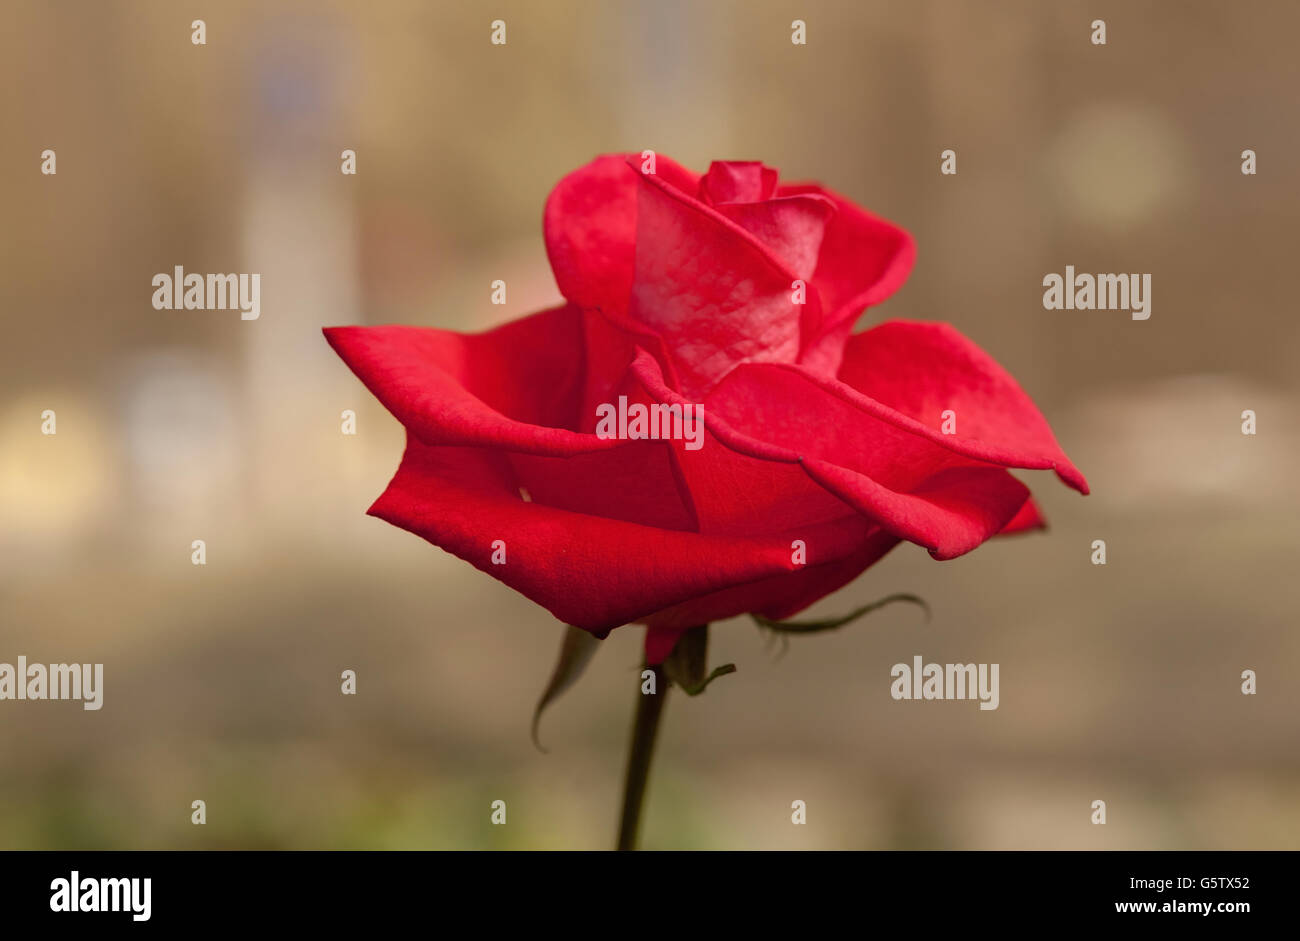 Rose red flower in garden Stock Photo